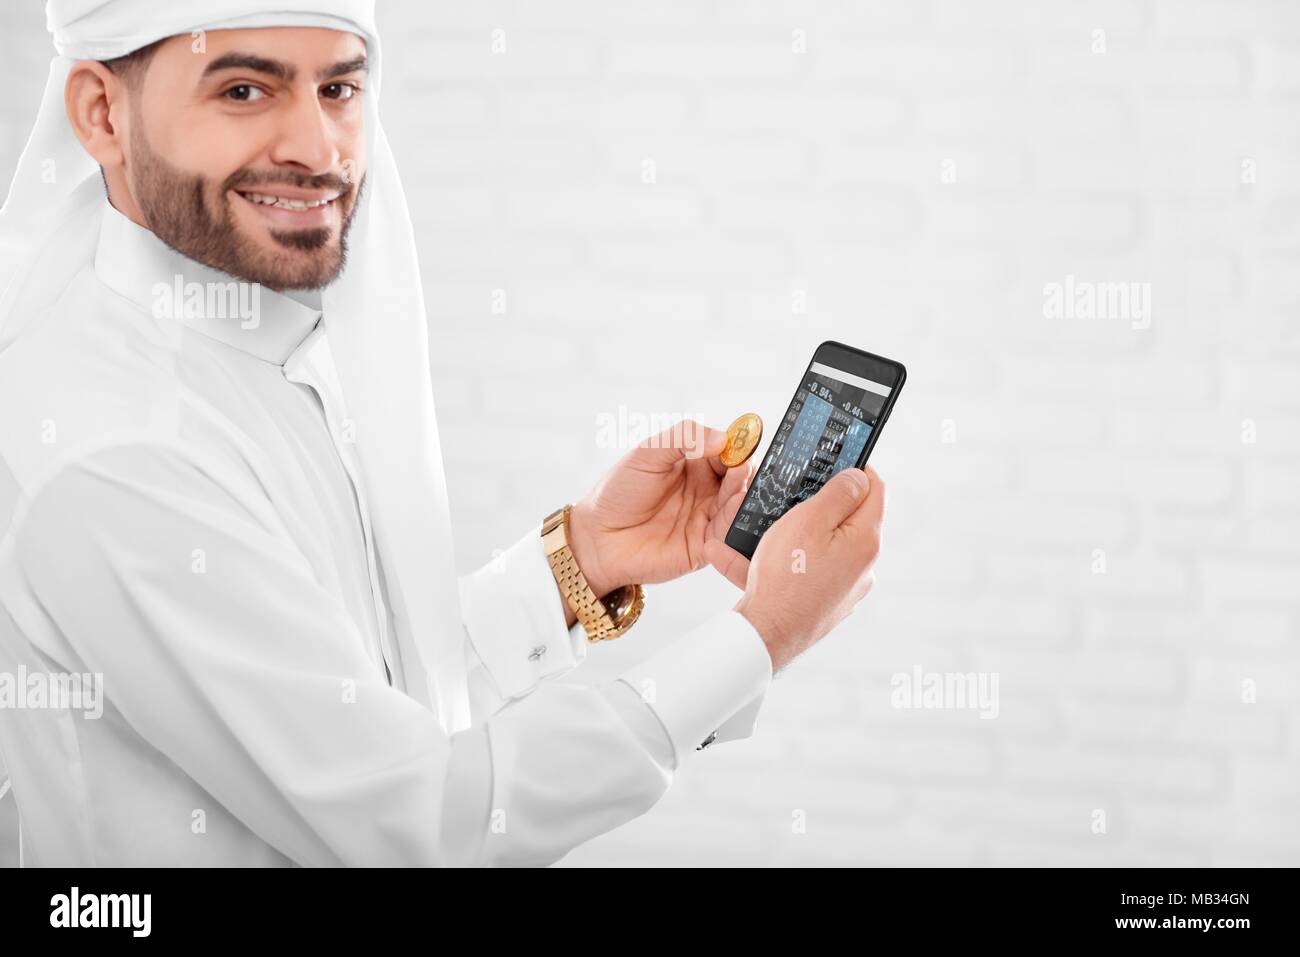 Jeune musulman homme conserve bitcoin or et du téléphone mobile dans une autre main. Il est sur le fond de studio blanc. Homme d'un air heureux et engagé. Banque D'Images